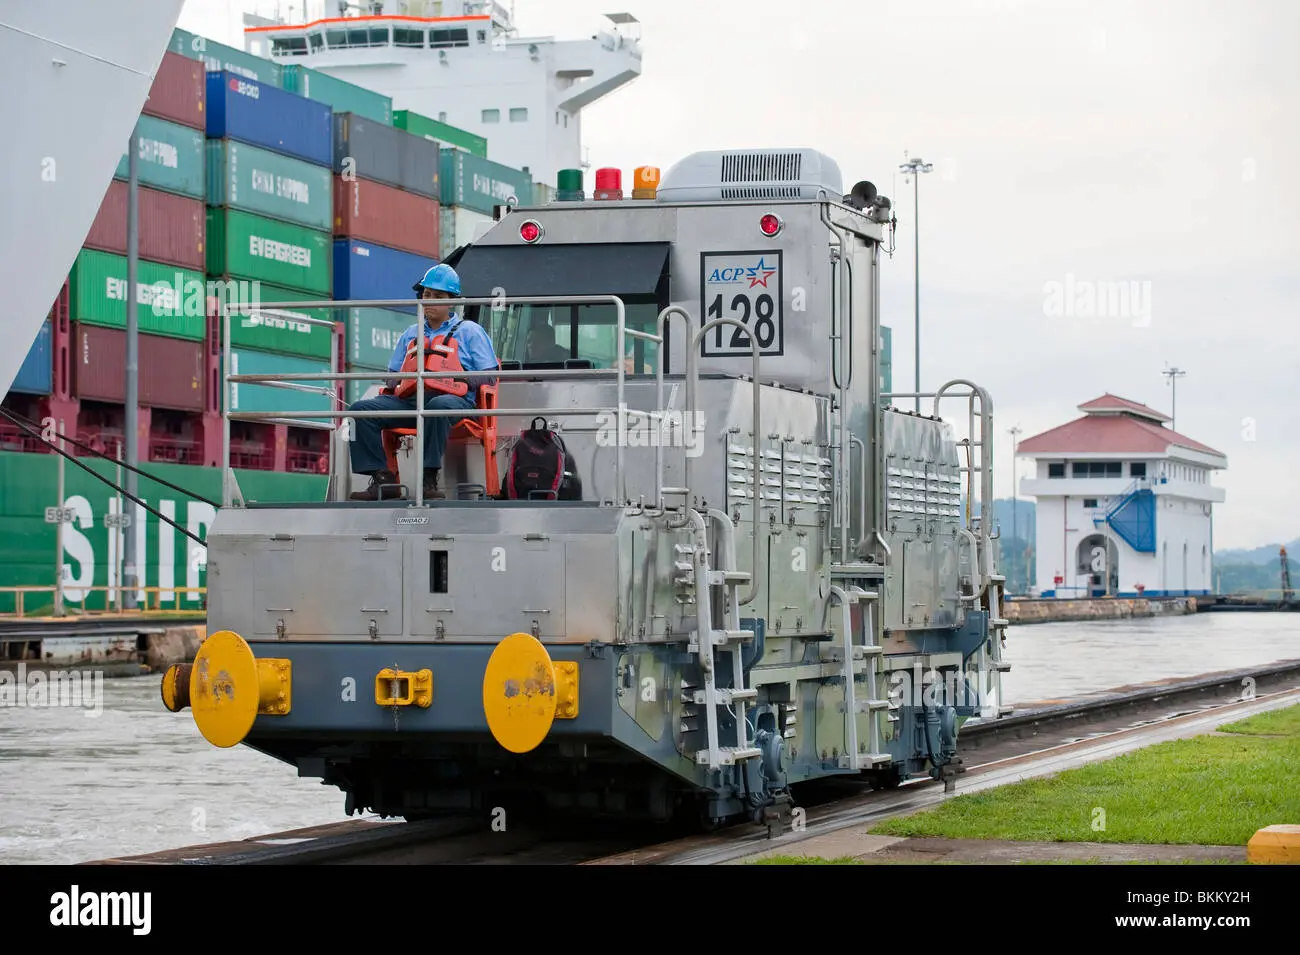 locomotoras ferrocarril de panama - Cuál es la función de las locomotoras en el Canal de Panamá